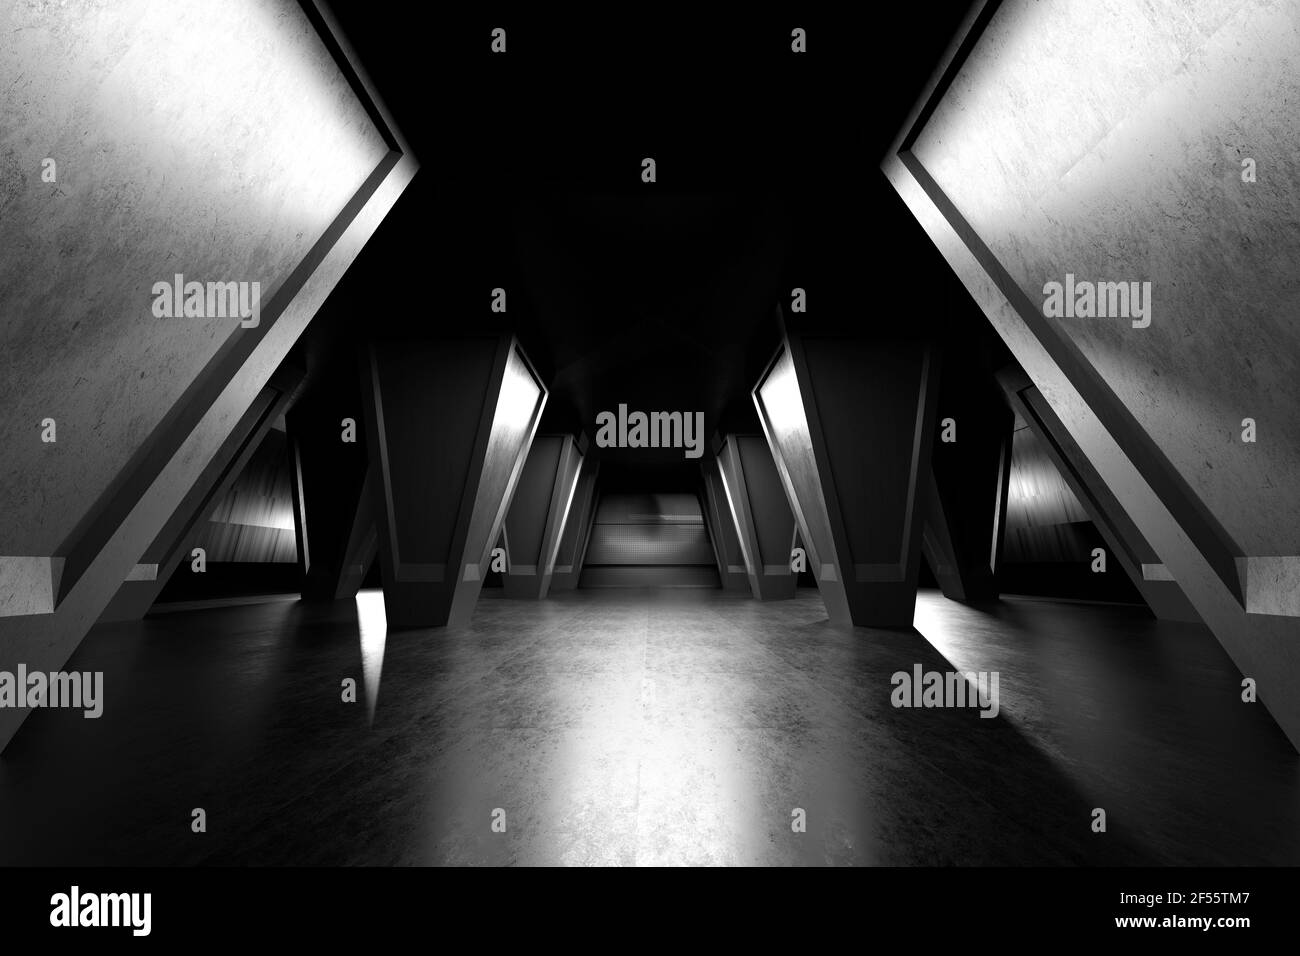 Dreidimensionale Darstellung von Säulenreihen im dunklen Saal Stockfoto